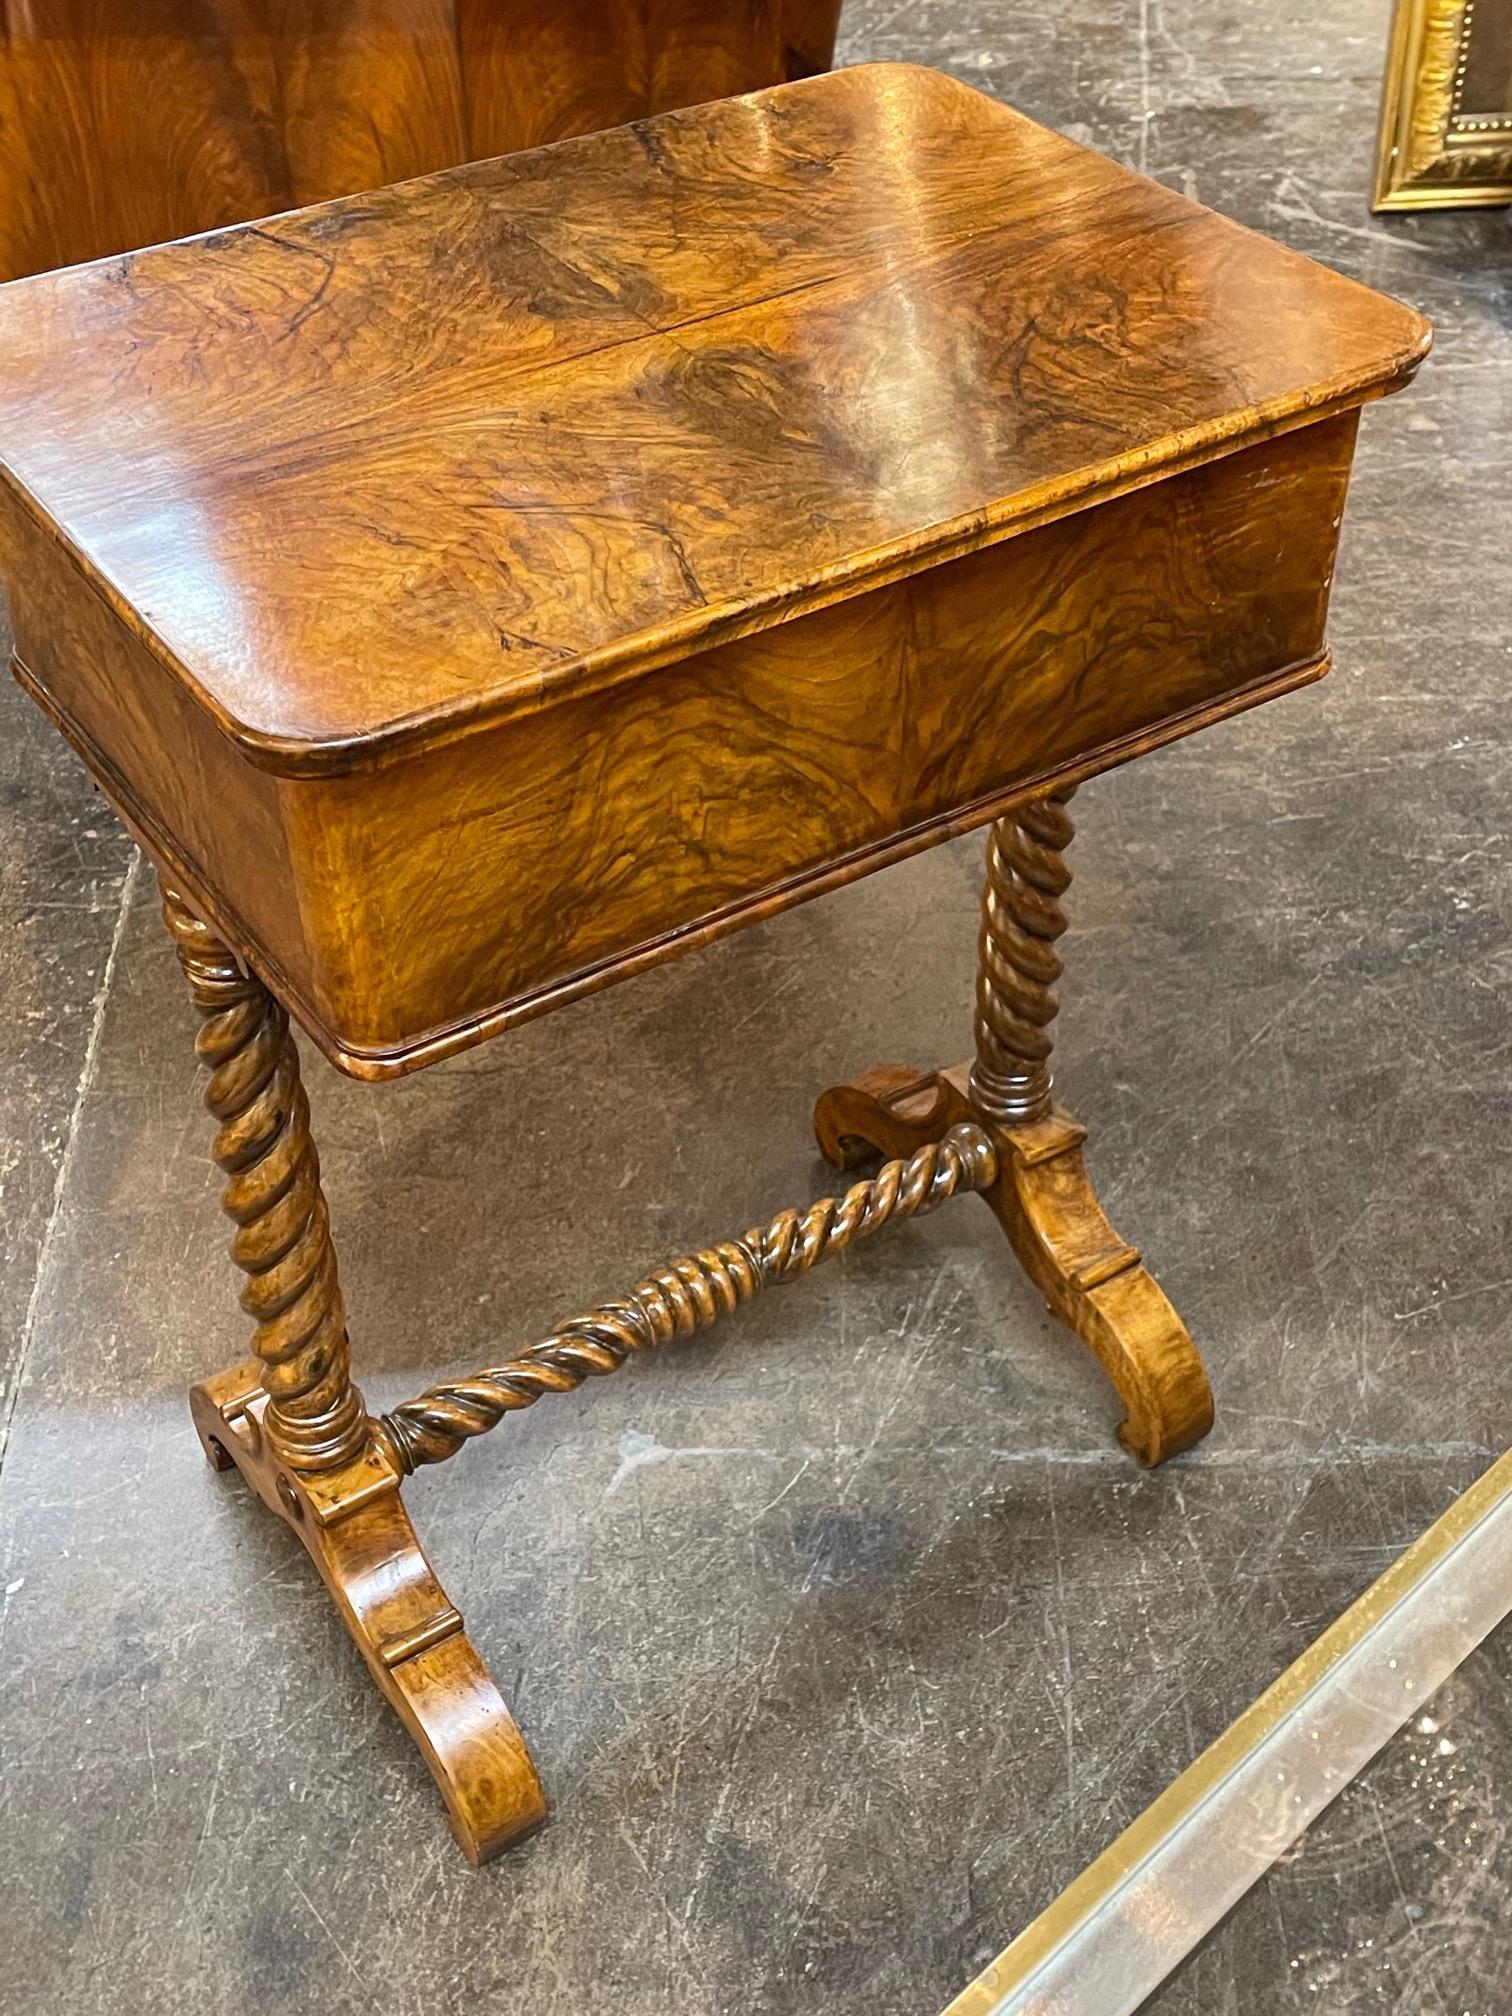 19th Century English Burl Walnut Side Table with Barley Twist Legs 4